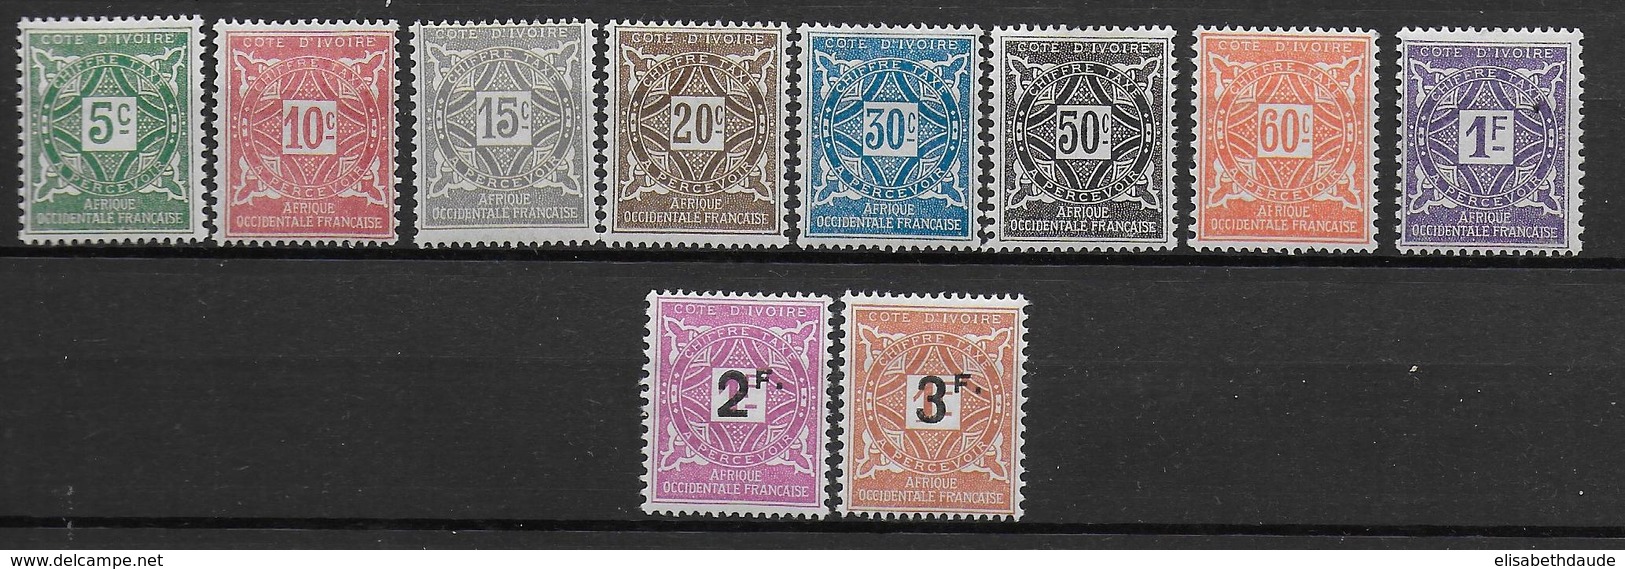 COTE D'IVOIRE - TAXE YT 9/18 * CHARNIERE ASSEZ PROPRE - COTE = 13.5 EUR. - Unused Stamps